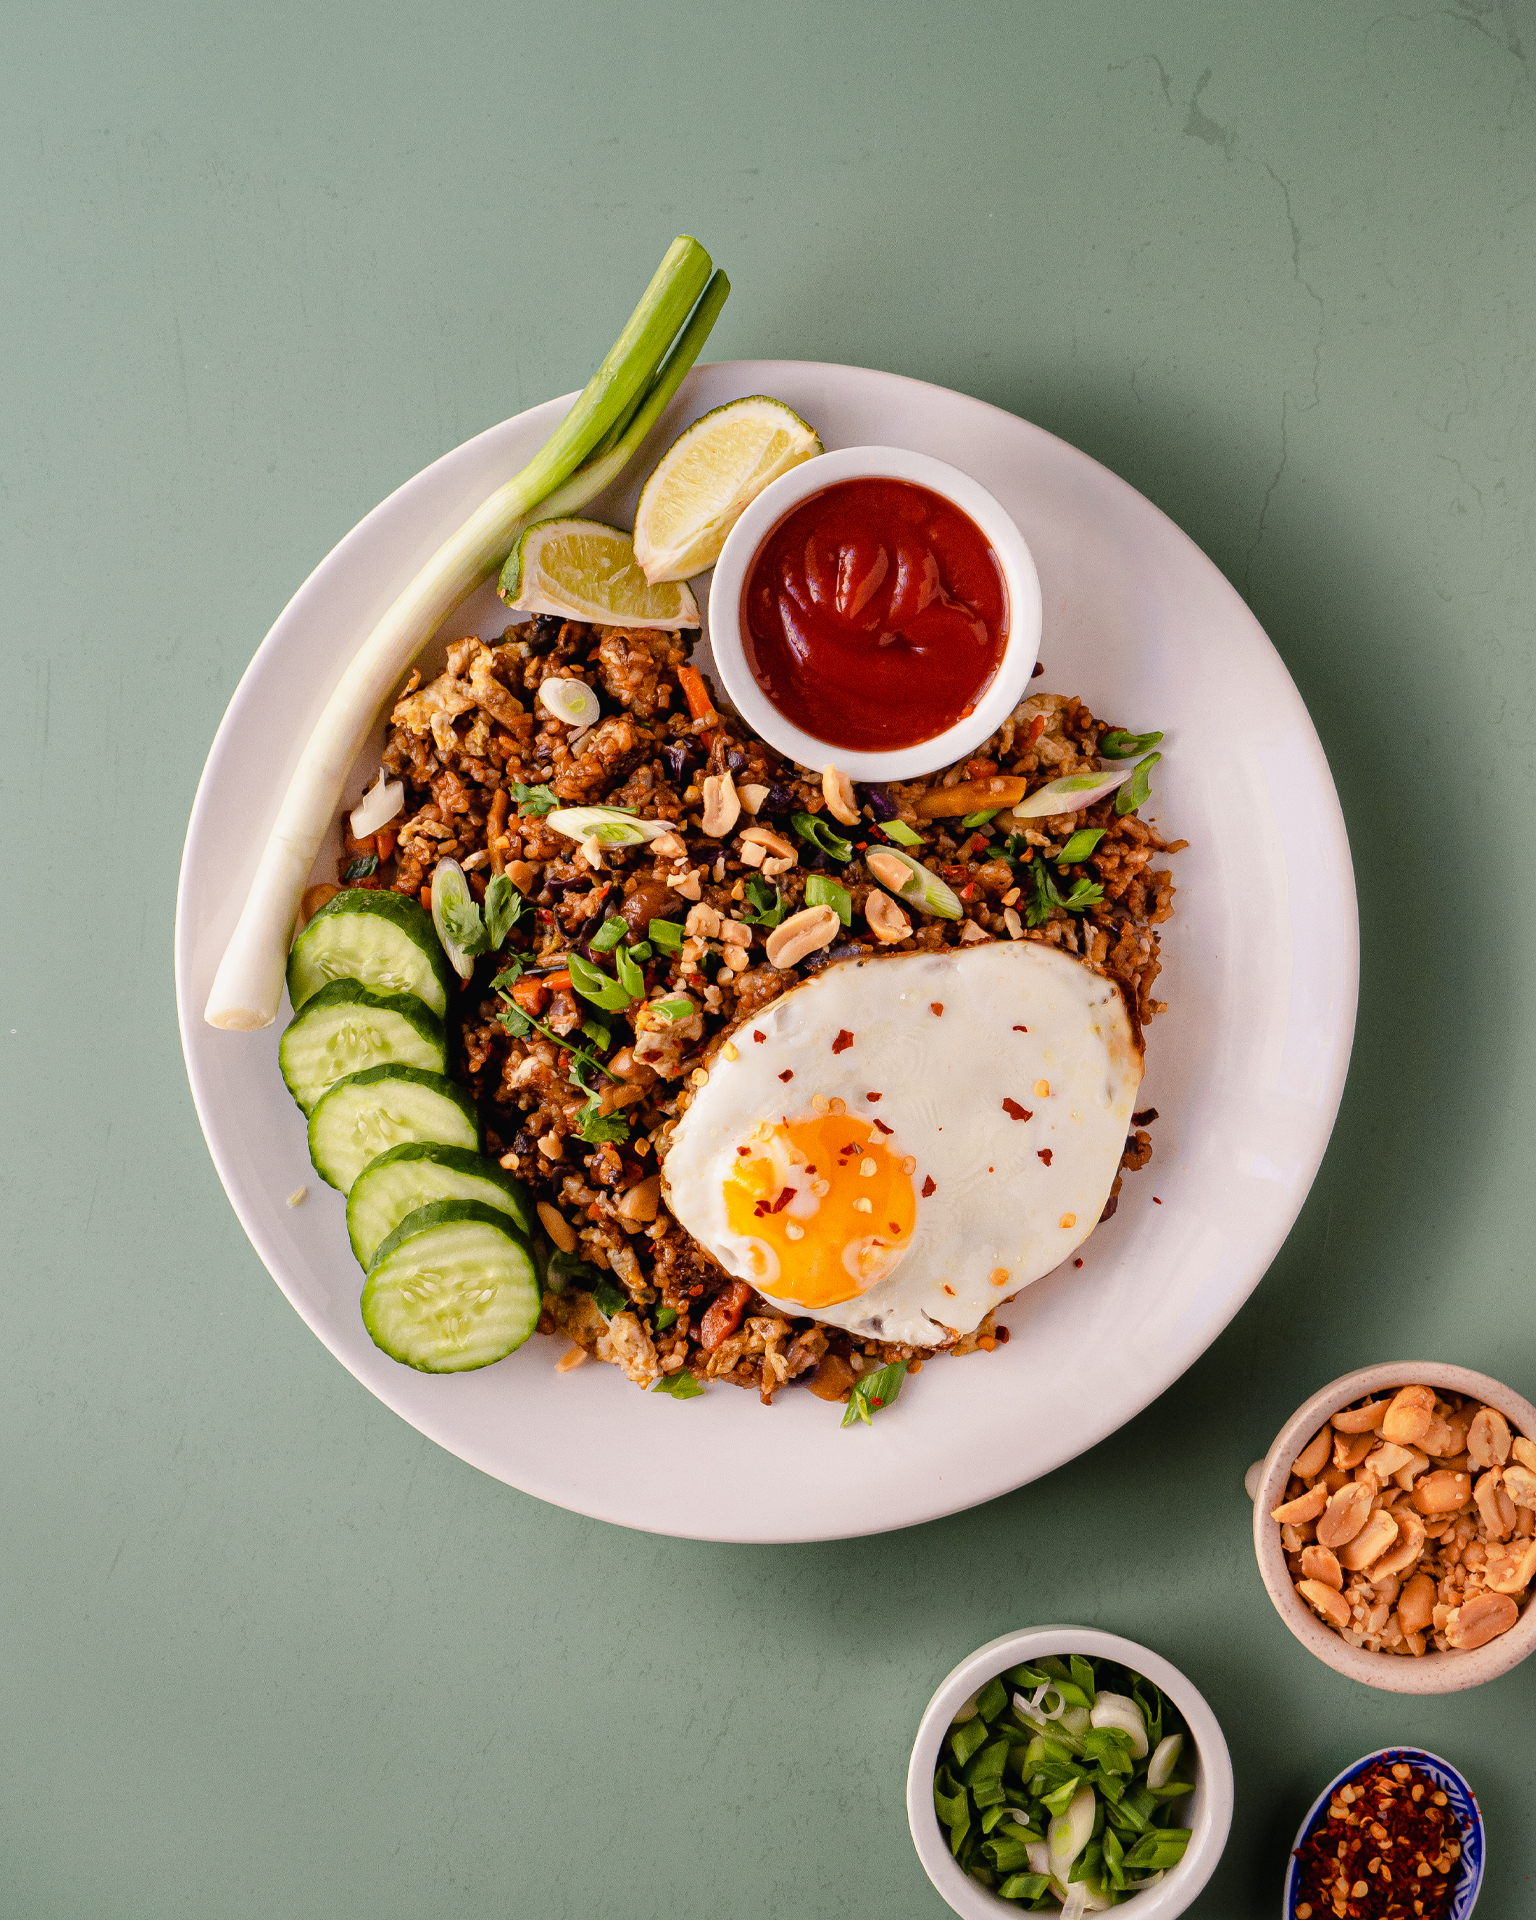 Καραμελωμένο ρύζι, μπόλικα λαχανικά, τηγανητό αβγό, τραγανά φιστίκια και όλο το έπος της ταϊλανδέζικης κουζίνας σε ένα πανγρήγορο πιάτο που φτιάχνεται με ό,τι έχεις στο ψυγείο σου.